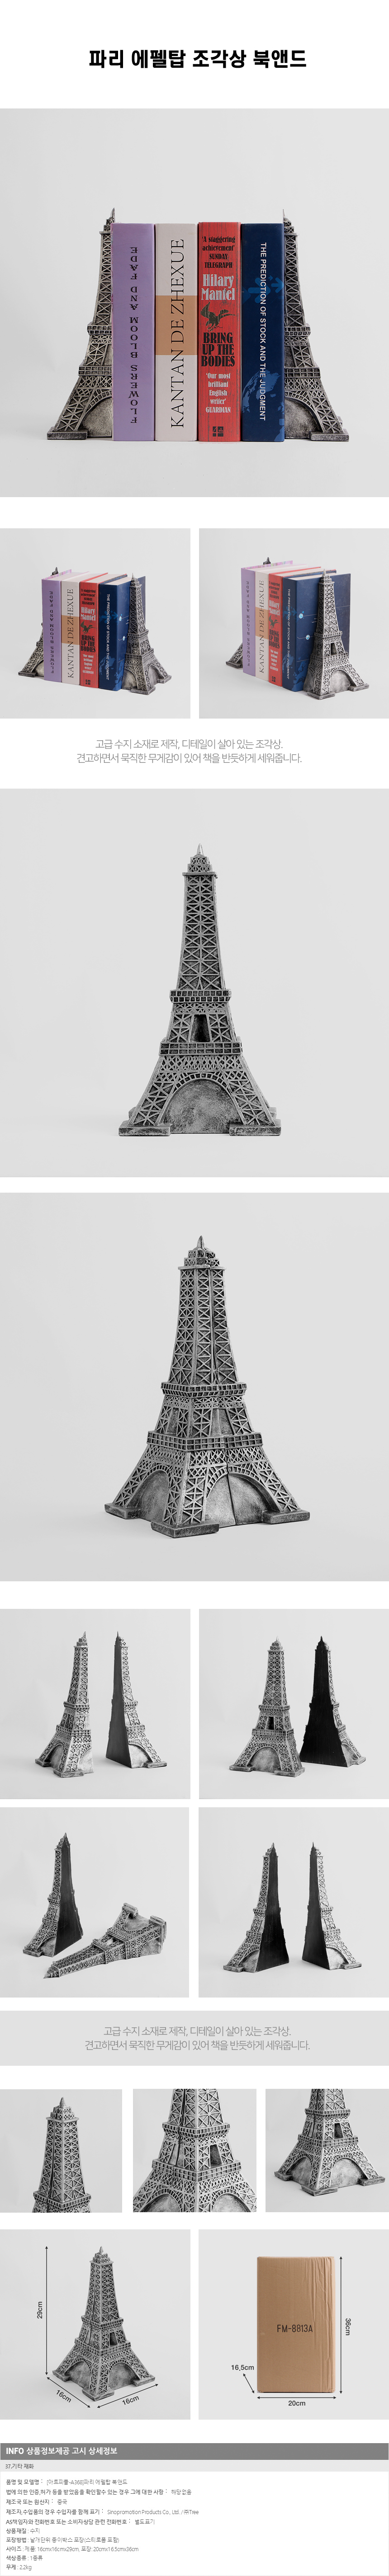 아트피플-A368 파리 에펠탑 북앤드/책꽂이 서재장식